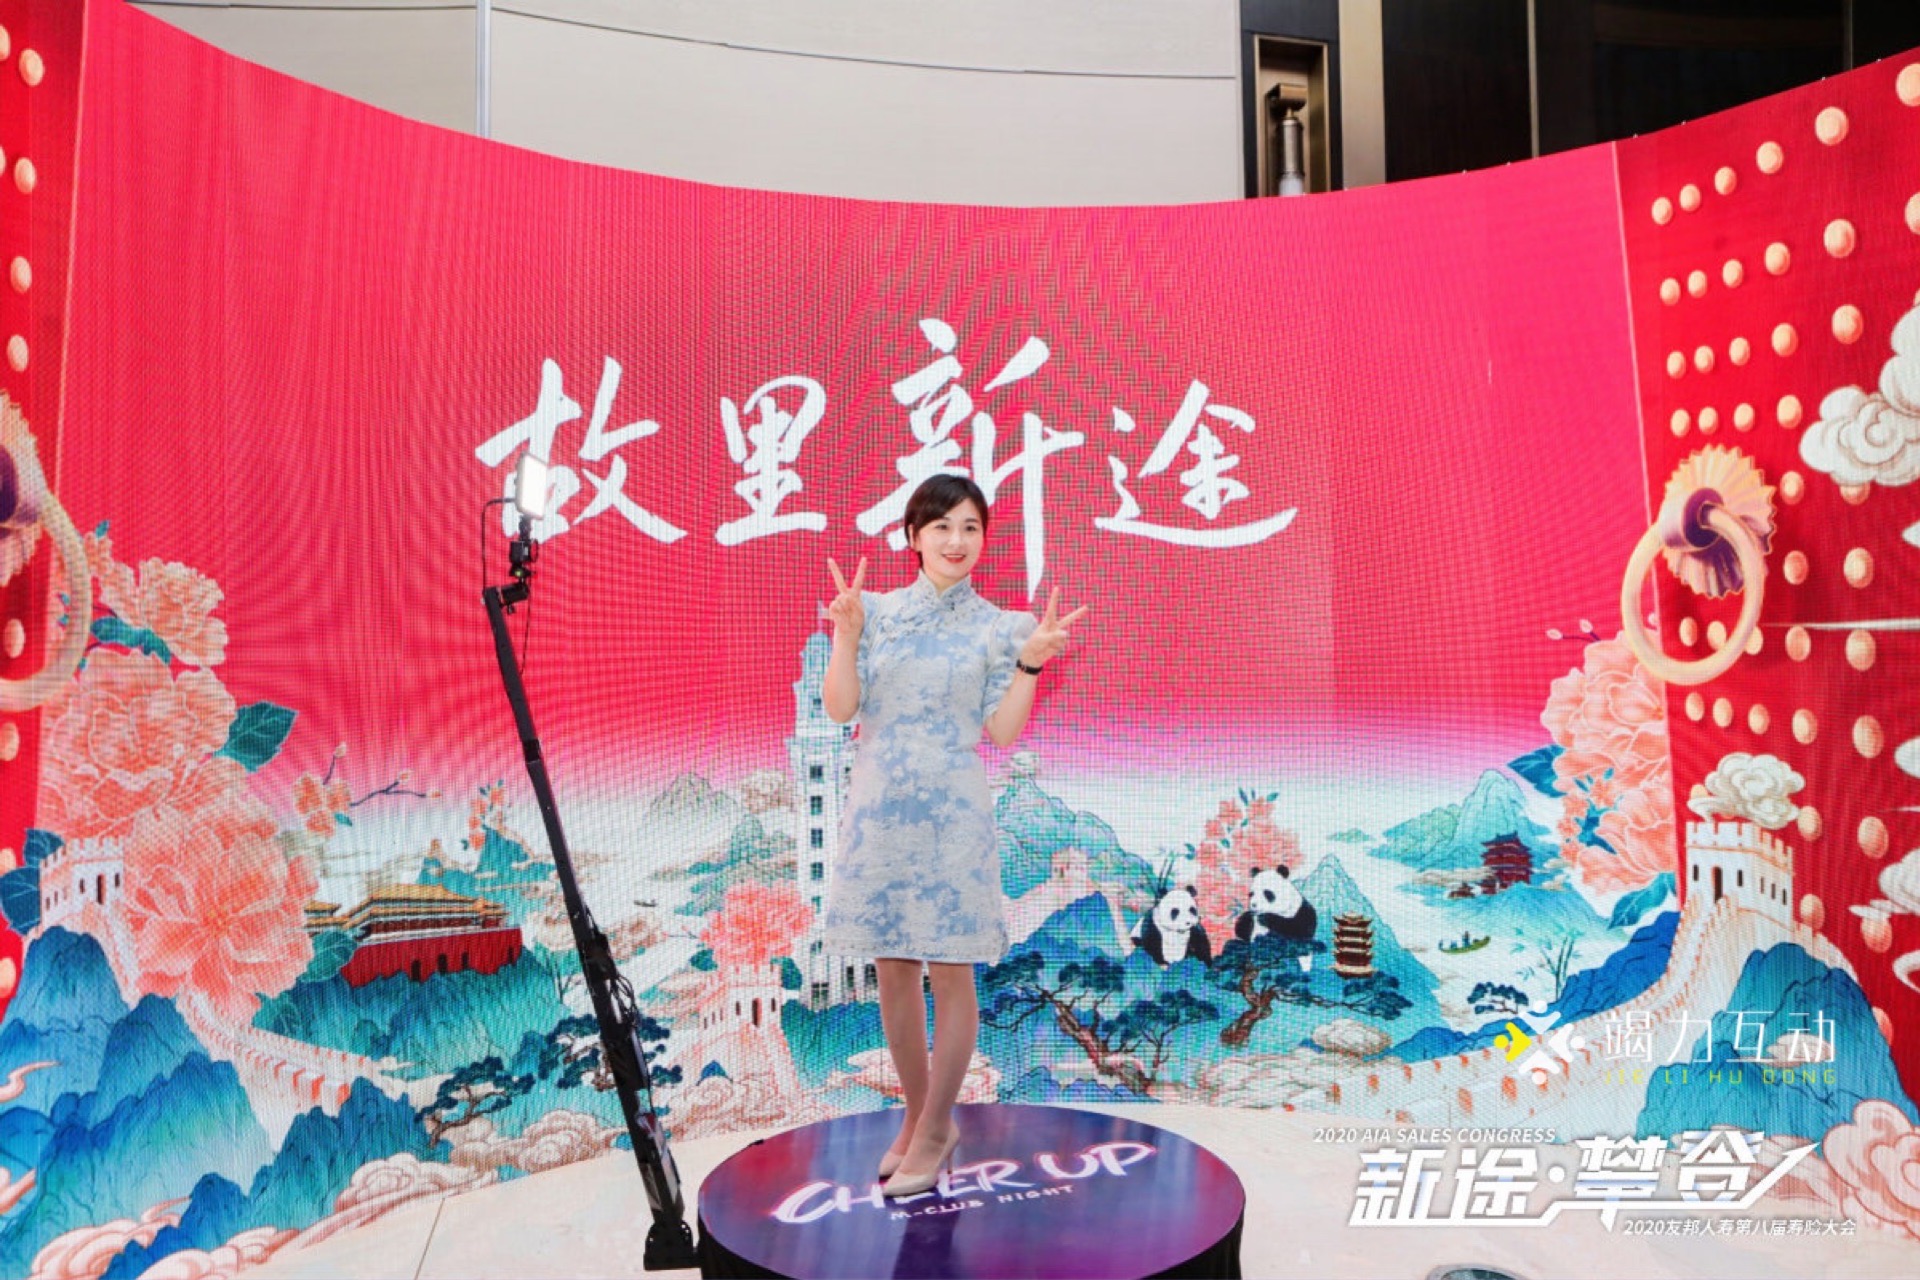 杭州站友邦人寿第八届寿险大会360升格拍照科技互动装置助力